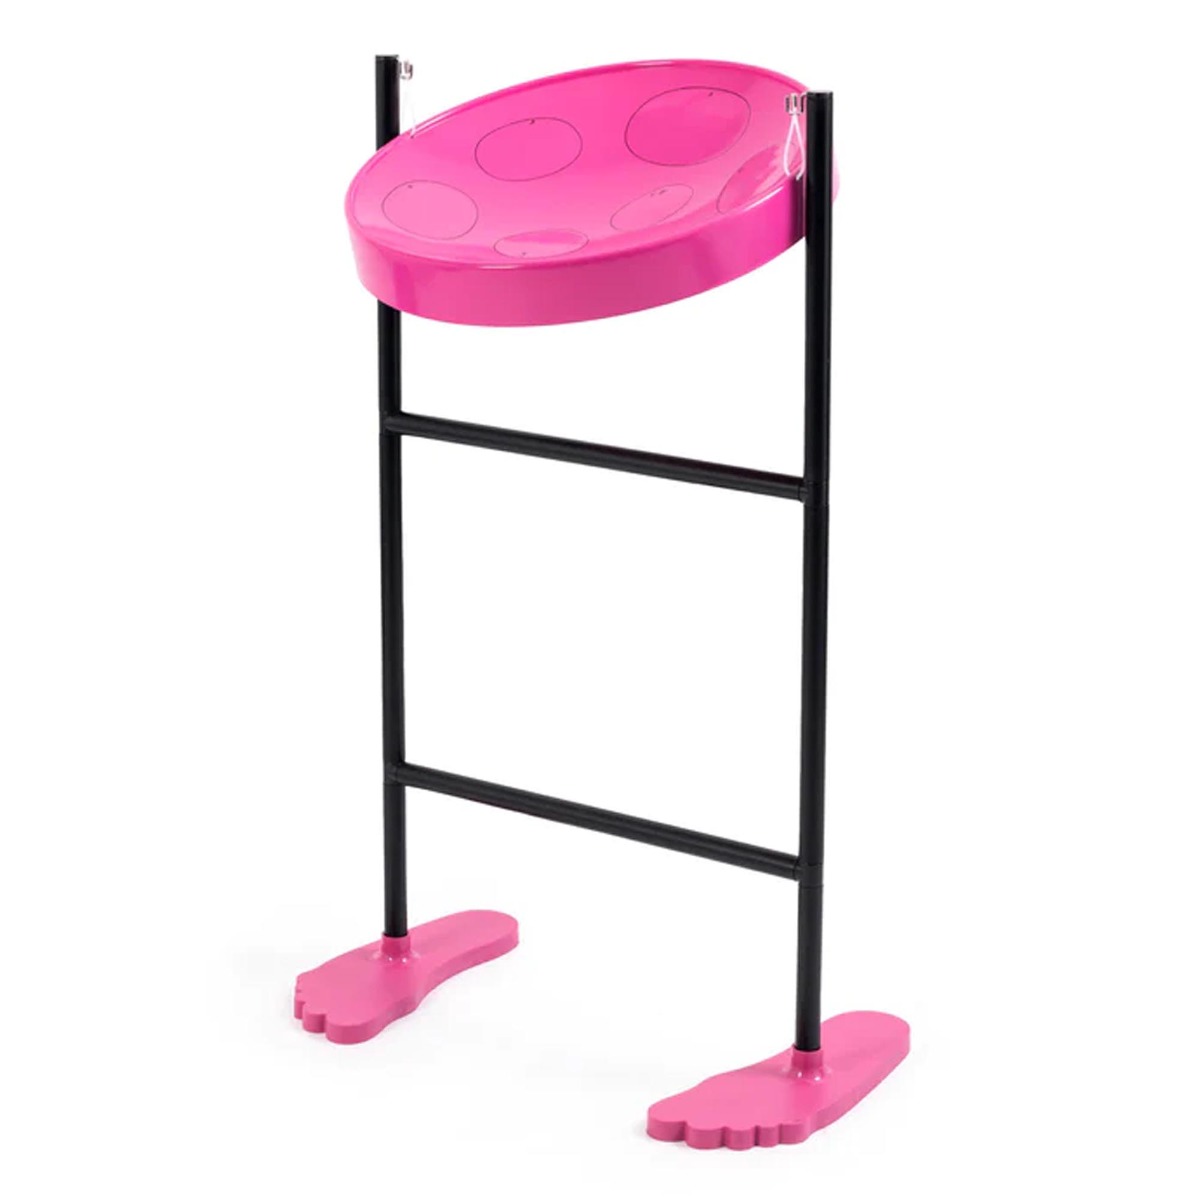 Jumbie Jam Steel Pan In Pink with Fun Feet